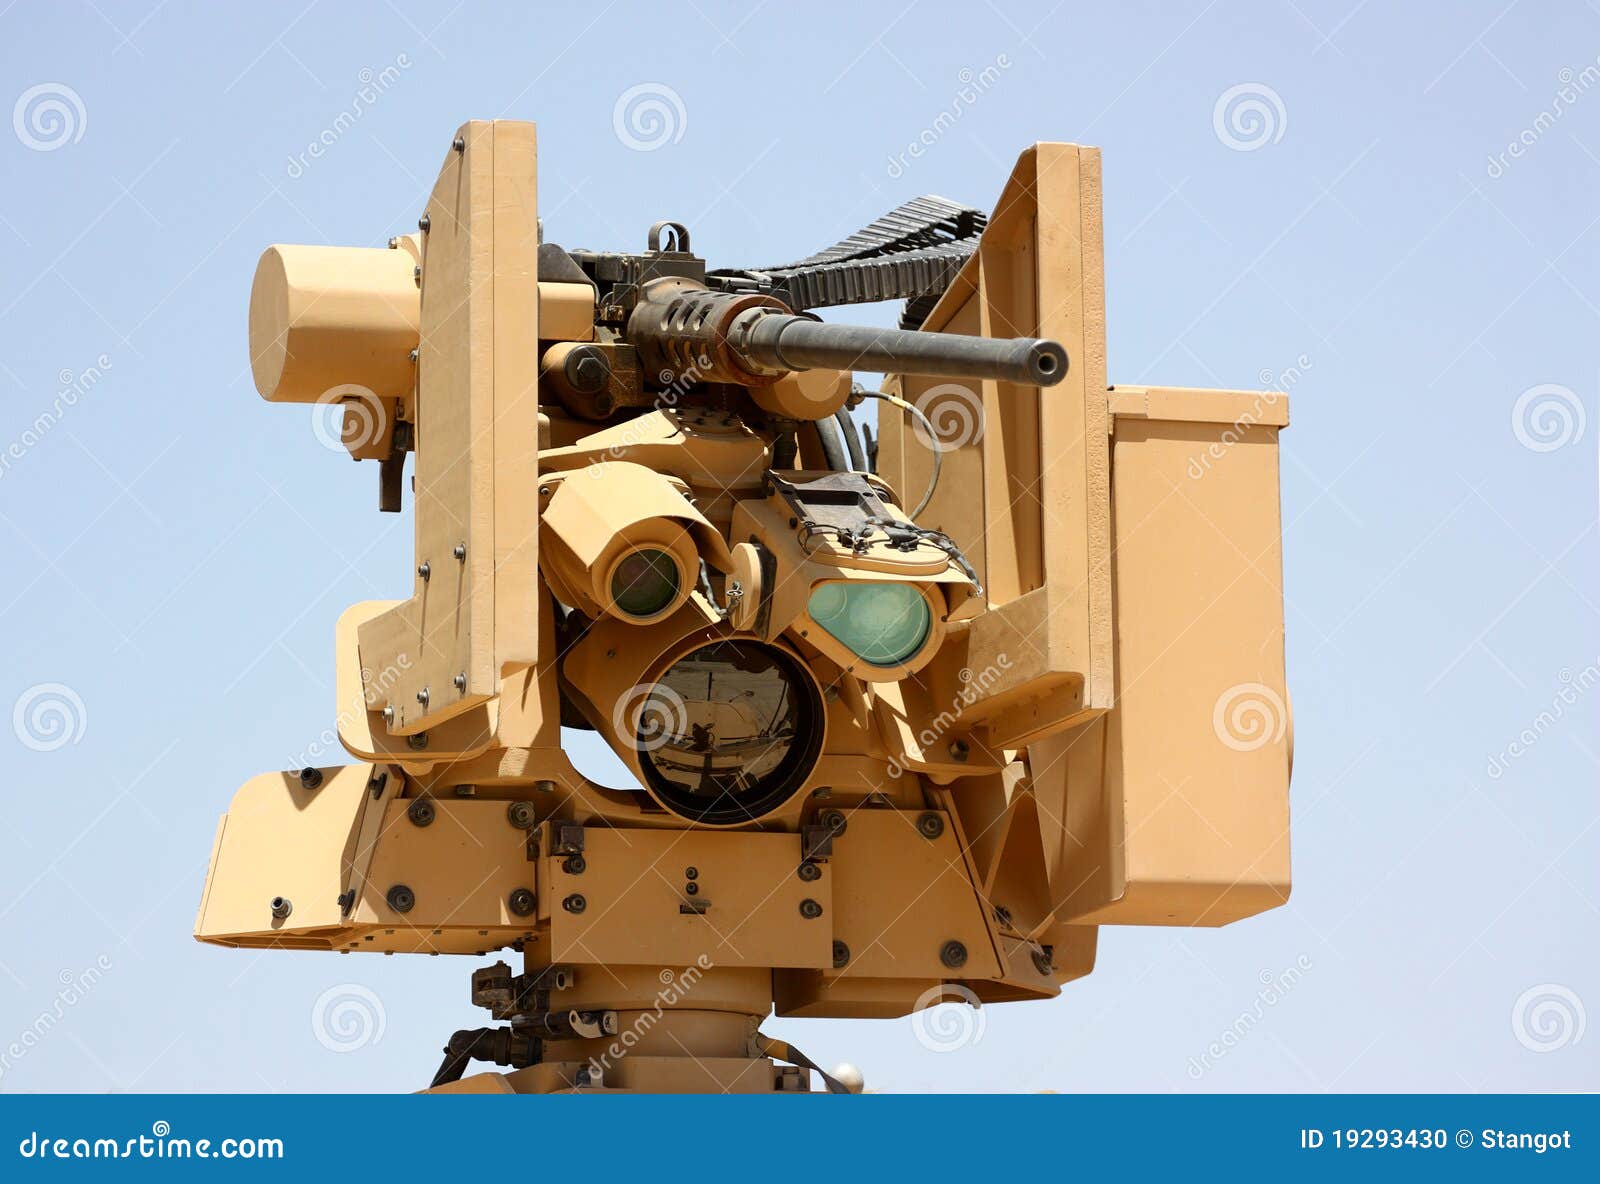 military machine-gun